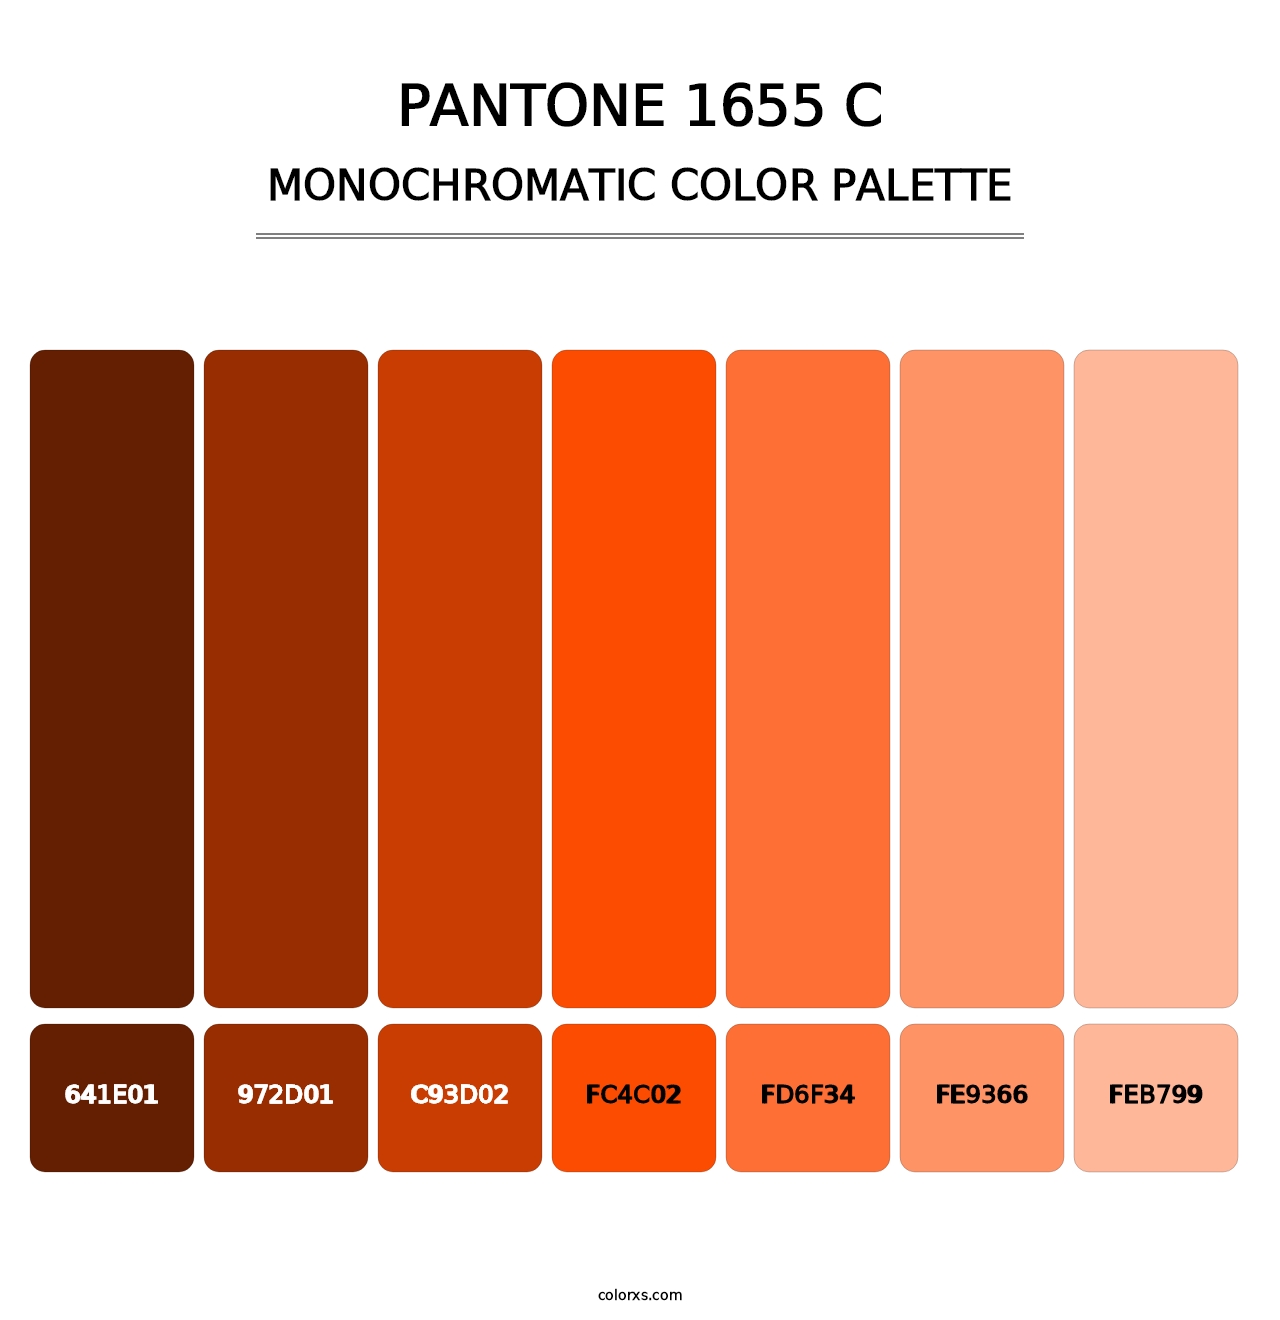 PANTONE 1655 C - Monochromatic Color Palette